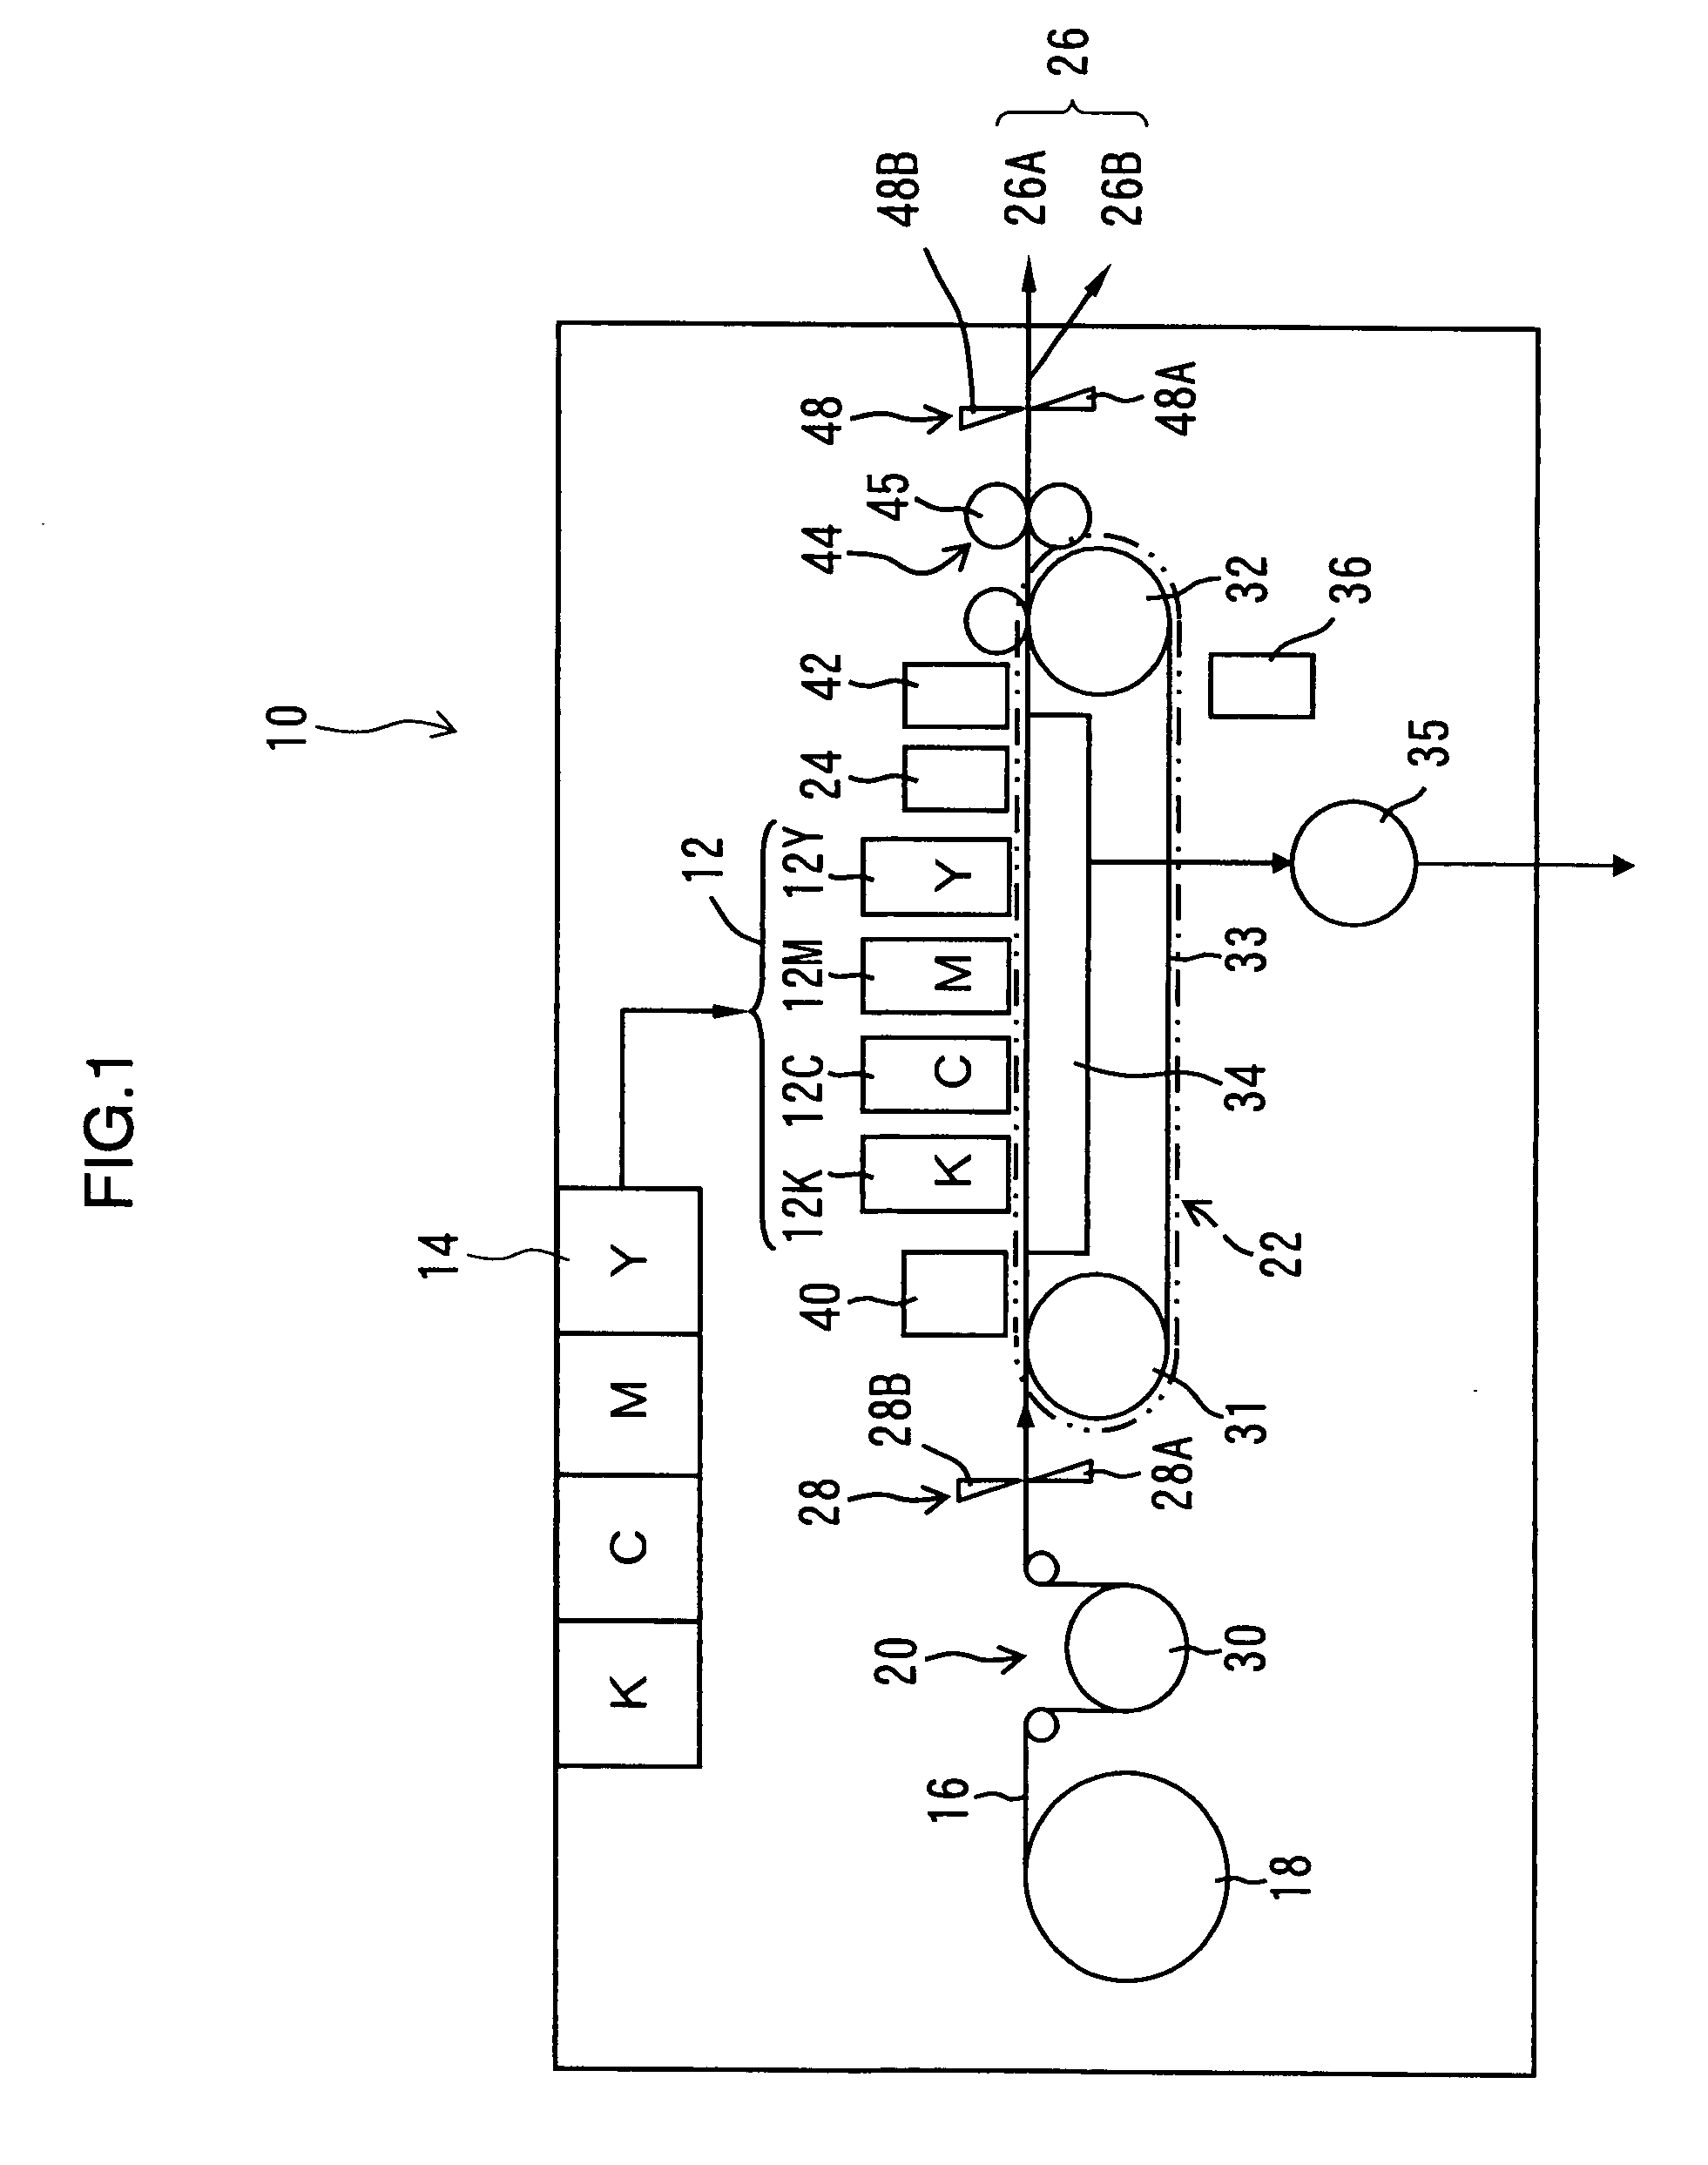 Liquid supply apparatus, image forming apparatus and liquid supply method